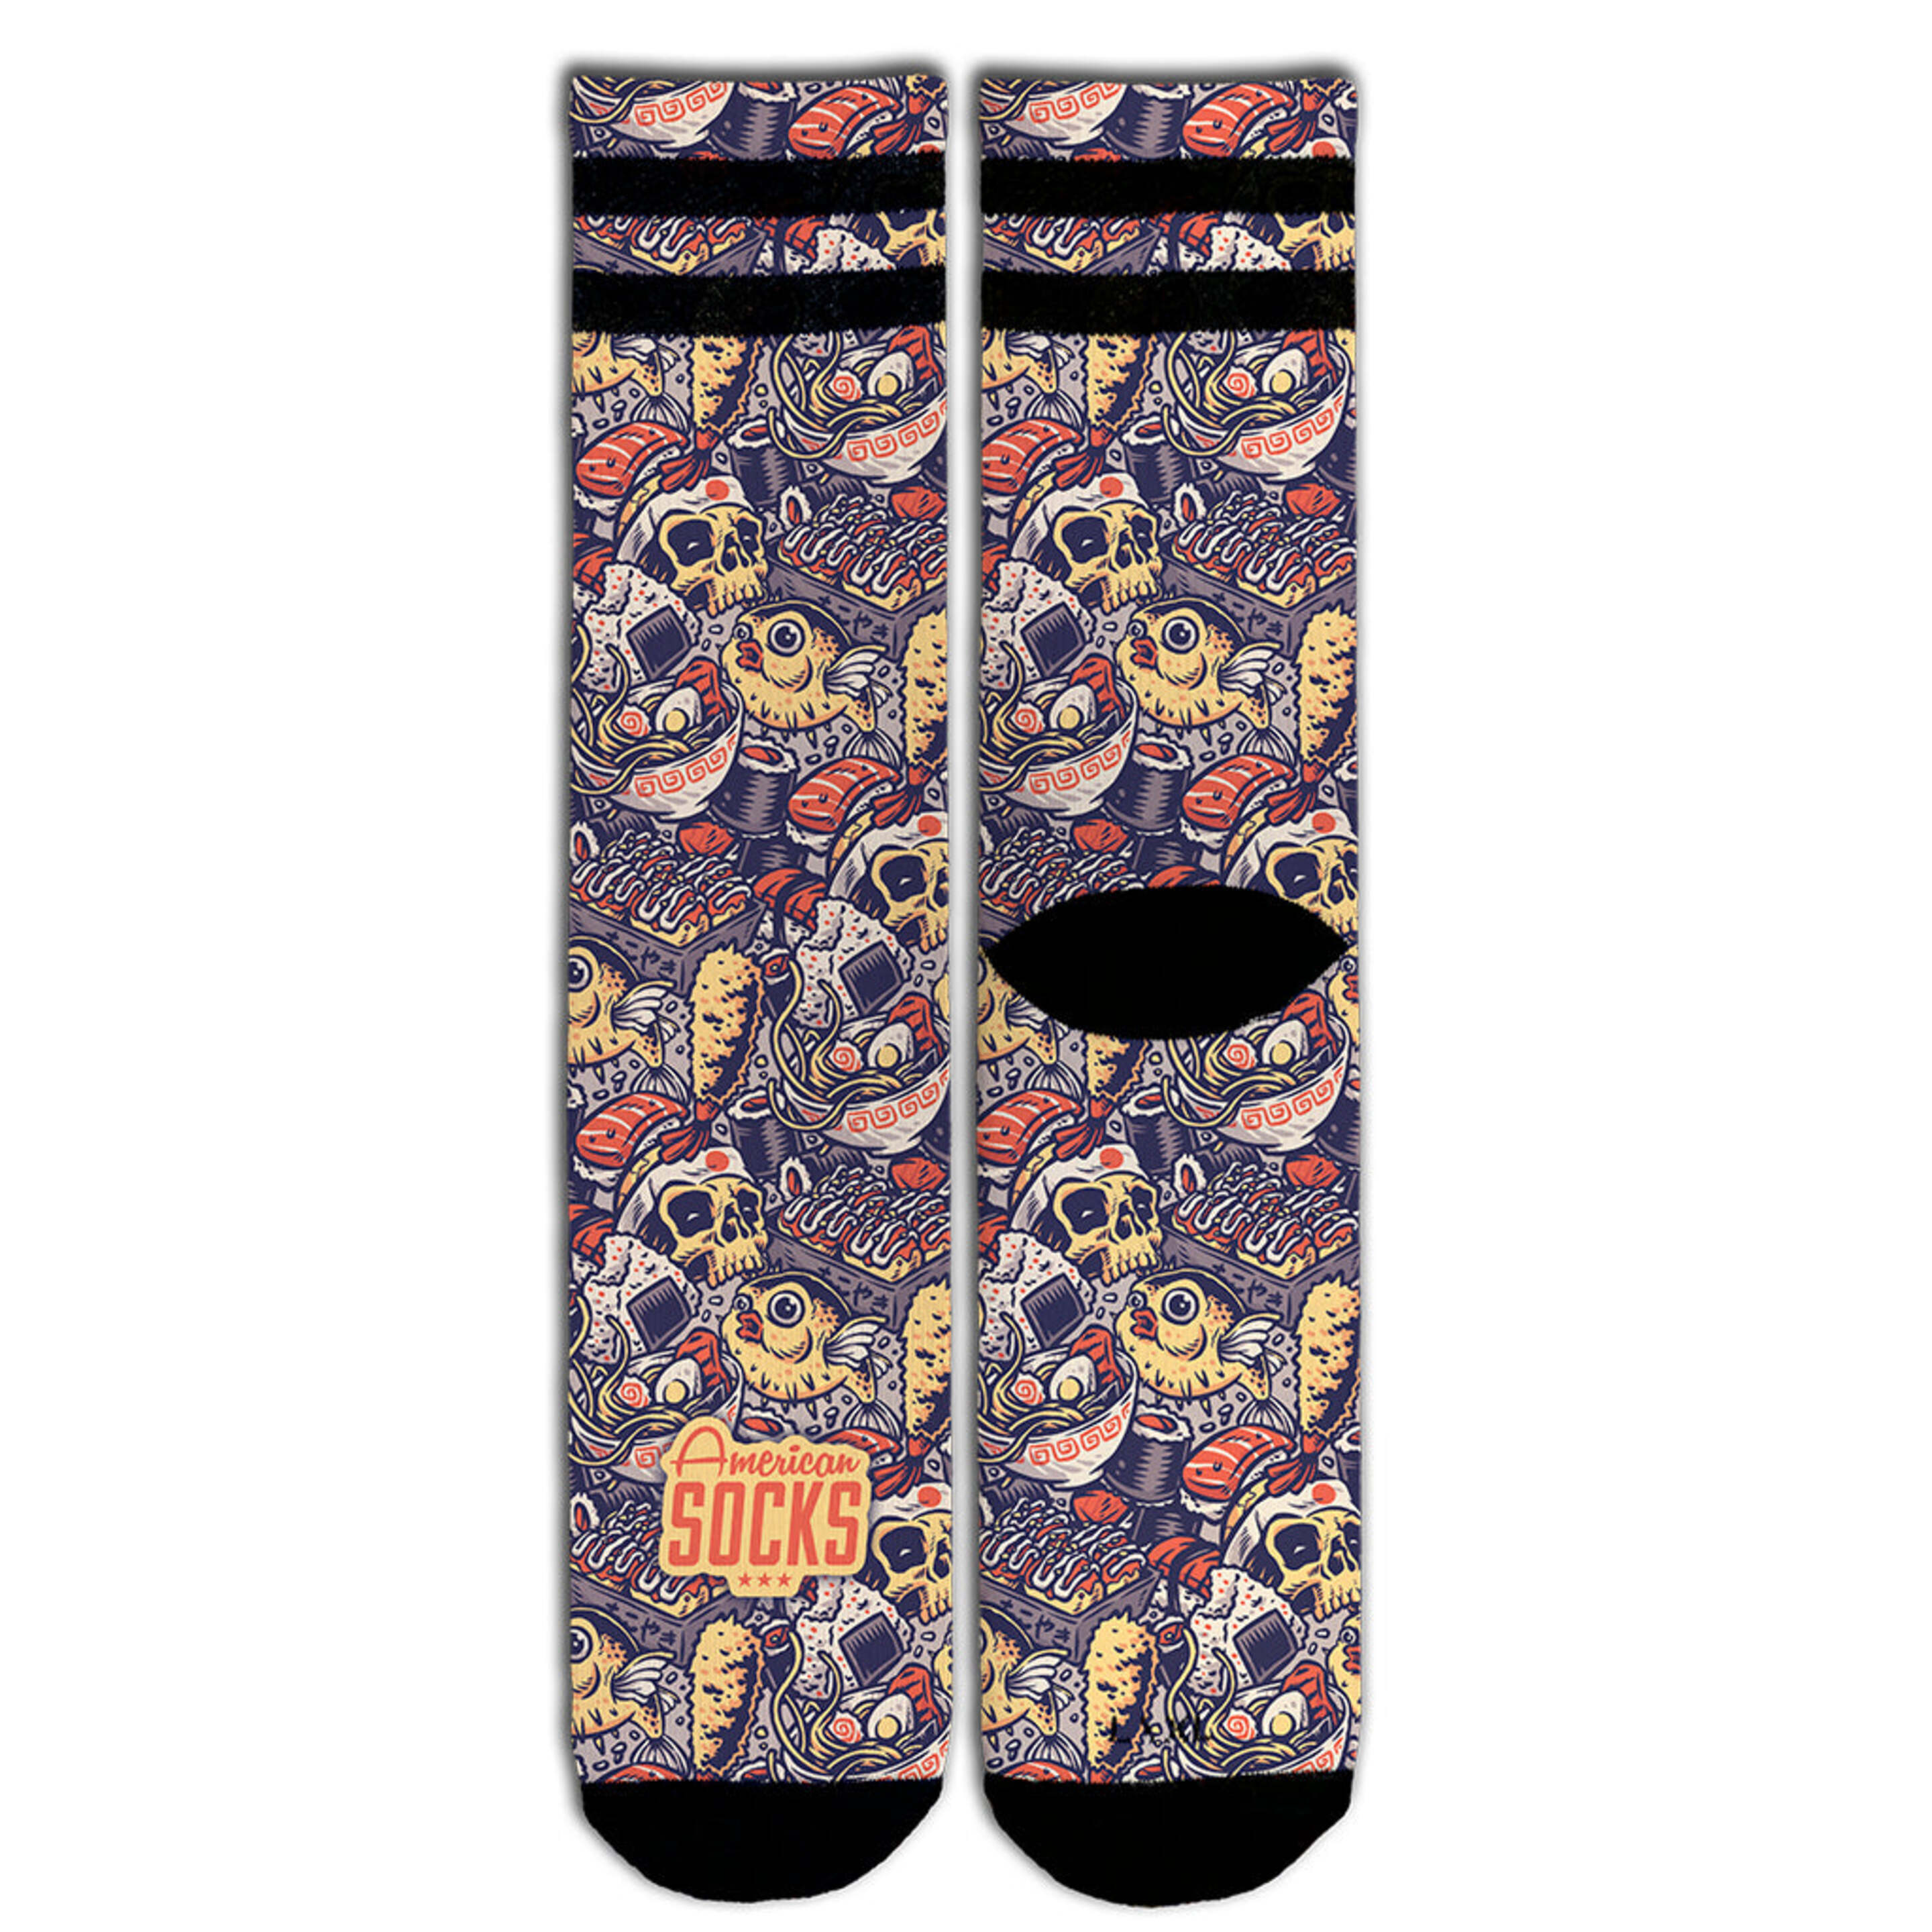 Meias American Socks - Oishii - Mid High - multicolor - 